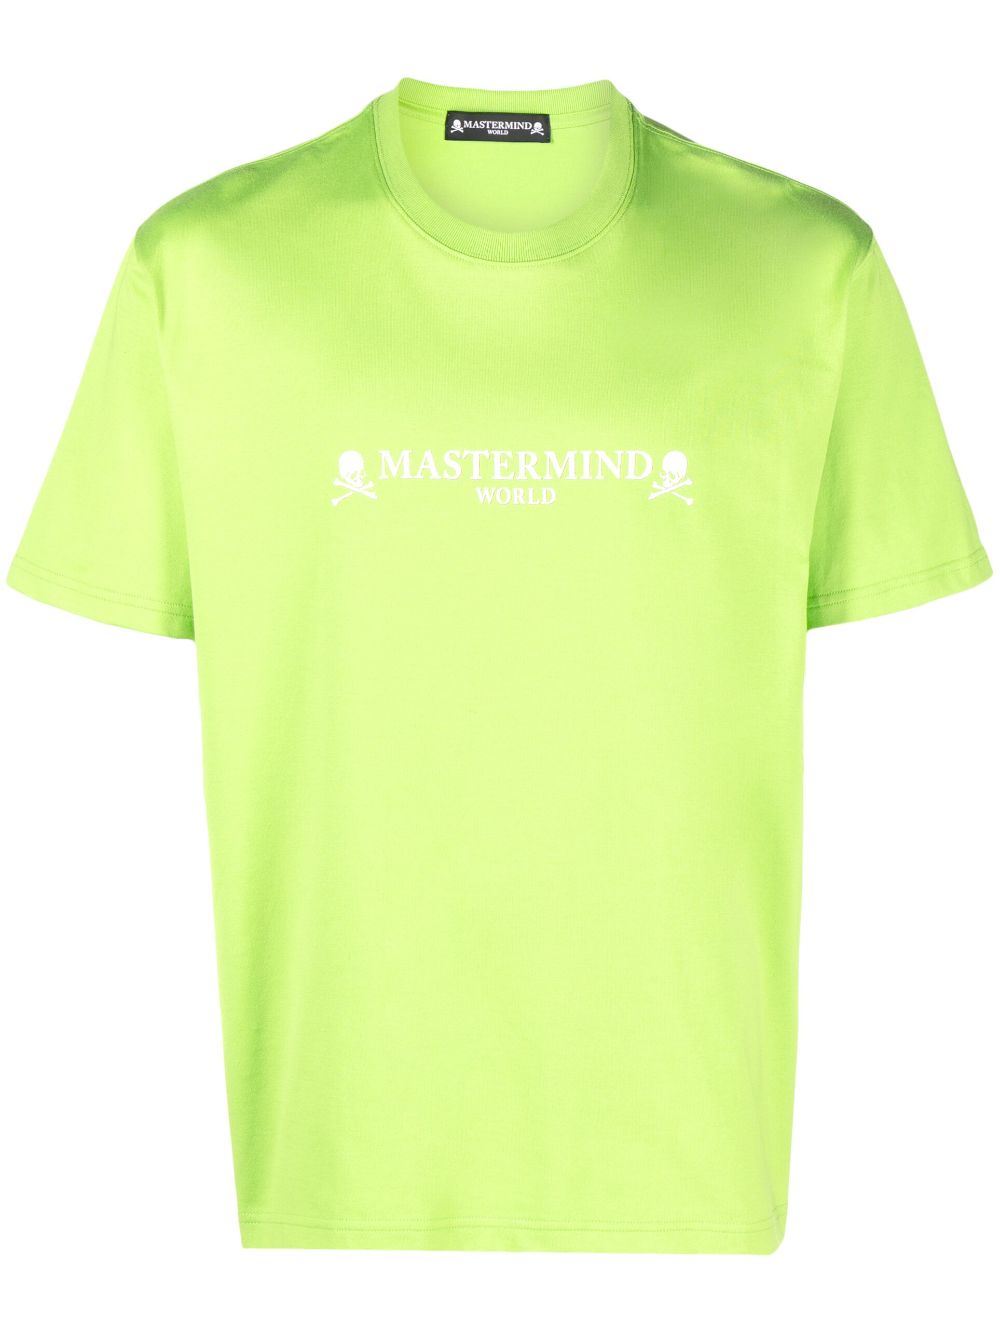 Mastermind World T-Shirt mit Totenkopf-Print - Grün von Mastermind World